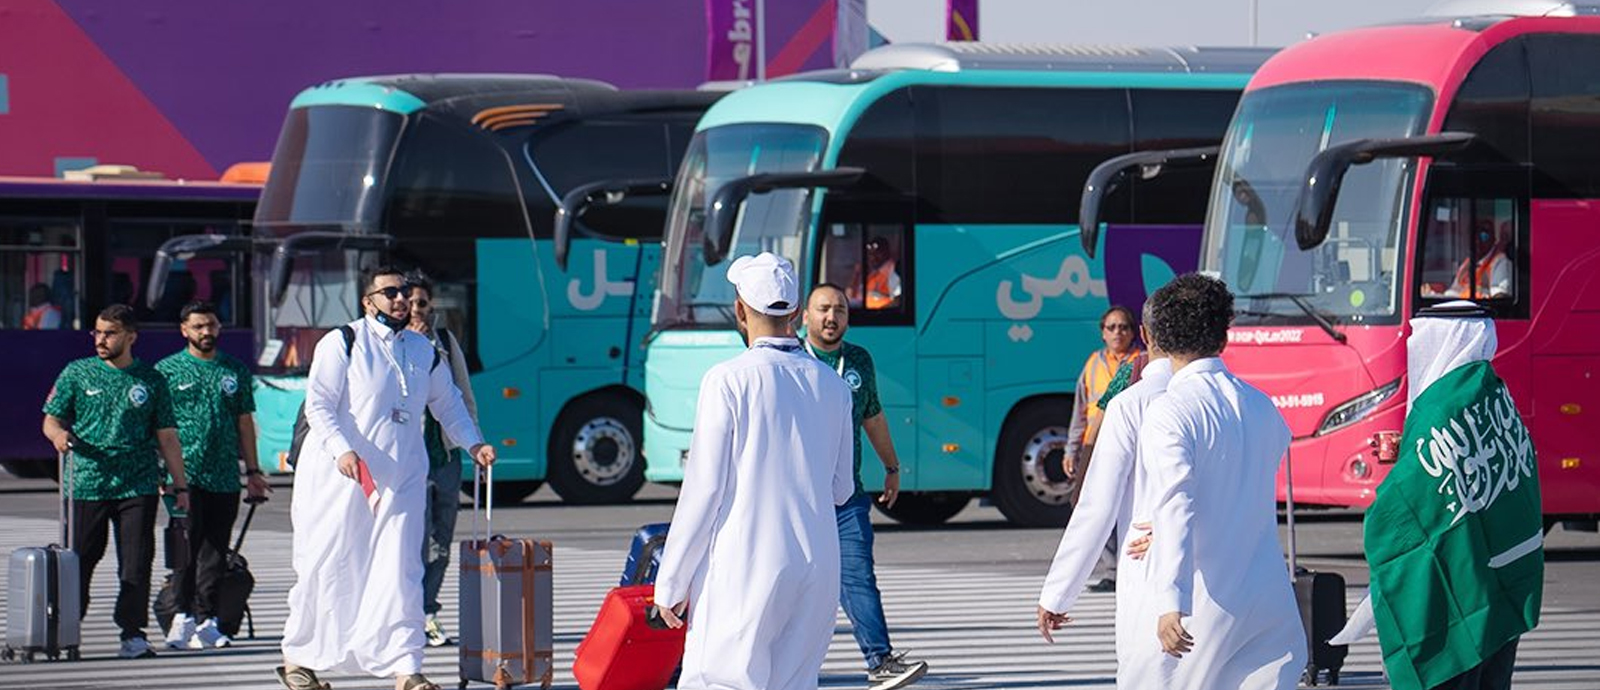 إلغاء شرط الحصول على "بطاقة هيا" لدخول دولة قطر لمواطني ومقيمي دول الخليج